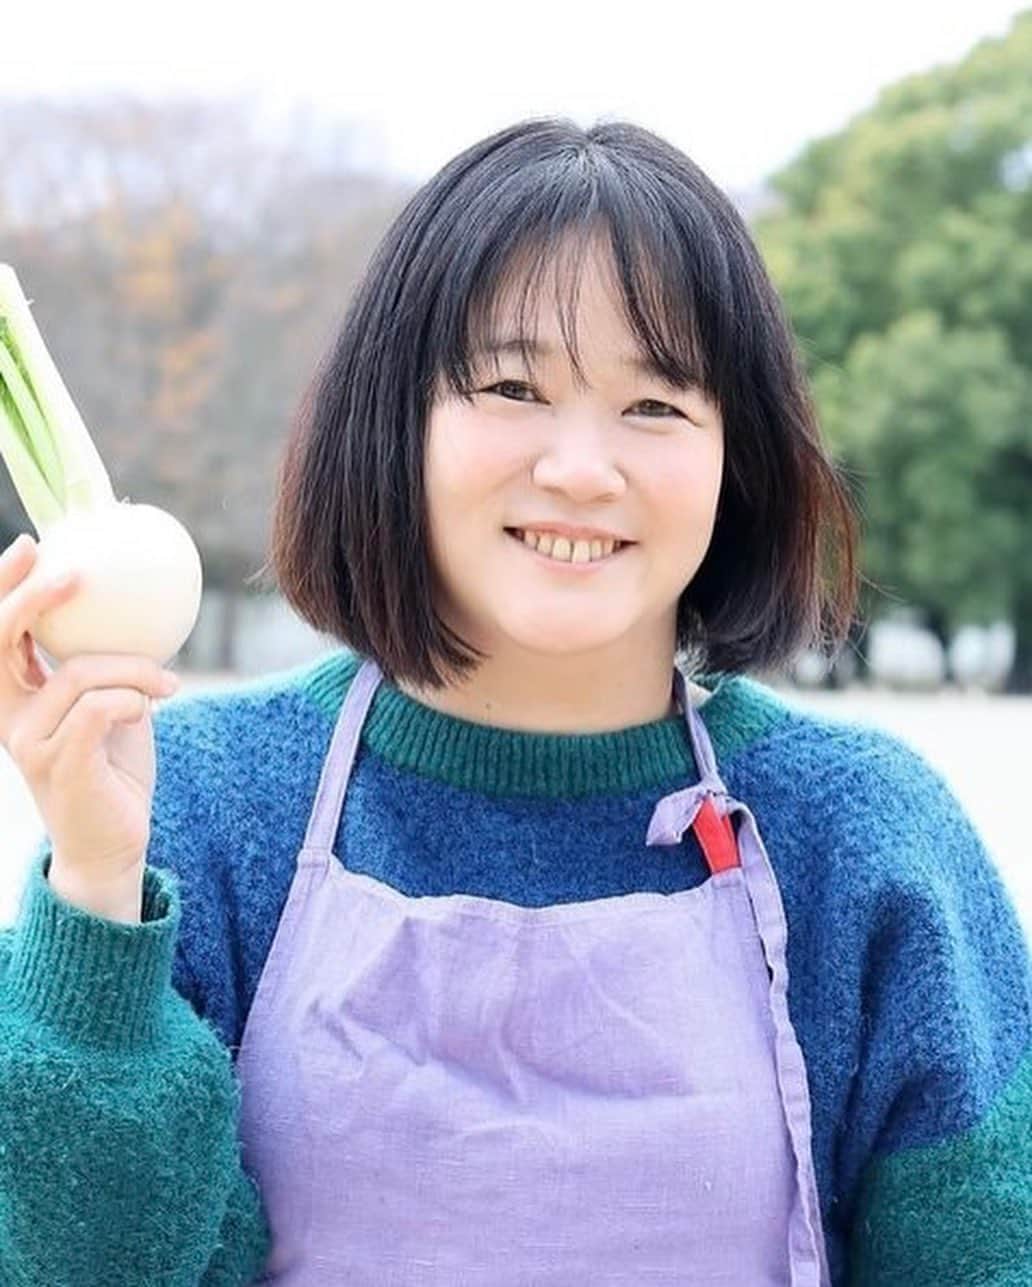 三浦友加さんのインスタグラム写真 - (三浦友加Instagram)「Umui Emikoさんの緊急参戦が決定！  “入場料が野菜”の新しい形の「食×音楽」の 体験型交流イベント『ギブミーベジタブル』 @庄内　風と土の美術館   10月22日（日） 　酒田市の鳥海高原の家族旅行村で開催されます。  「庄内　風と土の美術館 ～アート＆マルシェ～」   ▼オフィシャルWebサイト https://shonai-art.studio.site/  ご参加頂きます、皆さんを紹介させて頂きます。  ◎ 池田義文さん（奈良）  ギブミーベジタブル代表、発案者。 2016年からは、音楽、食、絵画、立体物、装飾、空間演出など様々な創造的方法で新しい ”アジア”的感覚生み出そうとする「新亜細亜的超越感覚～Neo Asian Super Sense」を主宰し、堺市が後援につき2019年5月には世界三大古墳である、仁徳天皇陵古墳前で新亜細亜的超越感覚を開催した。大阪の民謡、河内音頭のギタリストとして、奈良の東大寺をはじめとする関西地方の数々の祭りの櫓にて演奏をする。様々な活動が評価され2014年、環境省、一般社団法人ロハスクラブ主催「ロハスデザイン大賞2014」のヒト部門にノミネート。  ギブミーベジタブル HP: http://www.givemevegetable.com/  今回のギブミーベジタブル お料理に関わる皆さまをご紹介いたします！  ◎ 三原寛子さん（東京）  南風食堂 料理ユニット「南風食堂」主宰。 東京・新木場「CASICA（カシカ）」、下北沢「発酵デパートメント」の料理ディレクション、レシピ制作、商品開発などを手掛ける。アーユルヴェーダの料理教室『mahat tuning cooking class』を開催。著作に『WHOLE COOKING』『乾物の本』など。国際中医学薬膳師、インド政府公認機関BSS認定アーユルヴェーダセラピスト。  ◎ 斎藤夏子さん（鶴岡）  庄内鴨を育てております三井農場直営店 「庄内鴨とおいしいやきとり　ととこ」店主。 庄内の大地の恵みを受けて育った庄内鴨の解体デモンストレーションの機会をいただきました。 地域循環という自然のながれの一部分をお見せできたらと思います。  ◎ 古門浩二さん（鶴岡）  gira e gira (ジーラジーラ）店主。 神奈川県生まれ。 3年程イタリアへ。 山形に移住し庄内野菜と魚介のシチリア食堂Bedda Siciliaを開店。2022年移転改名しgira e gira (ジーラジーラ）に。 月に１、２度国内外問わず旅をしながら、独自の料理を表現し続けている。  ◎遠田恵美子さん（酒田・八幡地域）  大沢地区・青沢在住、大沢んめちゃんズ 会長 大沢地区の食生活改善推進協議会　会長（１３年目） 八幡地域の食生活改善推進協議会　会長 酒田市八幡地域大沢地区を拠点に、暮らしの中の家庭料理、郷土料理を長年研究し、笹巻きやしそ巻きを若い世代に伝える体験会なども開催。  ◎吉野敏充さん（新庄）  「吉野敏充デザイン事務所」代表 クリエイティブディレクター 山形県新庄市生まれ。東京デザイン専門学校卒業後、SOFT ON DEMAND、SOD artwokrsを経て吉野敏充デザイン事務所を設立。 様々な案件のクリエイティブディレクションを手掛ける。 同時に、地域の伝承野菜（在来野菜）や工芸品を後世に繋いで行くプロジェクトの企画・運営も手掛ける。 地元である新庄最上・山形県の地域資源を活用したプロジェクトとして、地元産農作物などの販売を行うマーケット『kitokitoMarche』、山形県新庄・最上地域広域情報誌『季刊にゃー』の制作・発行、山形県の工芸品のリデザイン・販路支援プロジェクト『山から福がおりてくる』の運営、新庄の後世に残す食のプロジェクト『新庄いいにゃ風土／SHINJO ii-nya FOOD』のプロデュースなど。  　 ◎マジカルパパさん（秋田）  代官山三宿食堂から恵比寿駅前食堂店長を経て04年に拠点を秋田県に移し、青い鳥のレストラン、トリノス食堂を開業。途中秋田市の老舗トラットリア道化の館などでキャリアを積み、現在はギャラリーみそ汁というみそ汁スタンドと画廊が合わさったようなお店を秋田市に開店準備中。マジカルパパはお惣菜ブランドの名前です。  ◎ Umui Emikoさん（大石田）  「Umui」店主。 東京にてイタリアンや和食の店などで働いたのち、自身の体調不良や家族の食生活のあり方、外食産業の食材の使い方に疑問を感じ、2011年４月、東京都内に自然食カフェ「Umui」 をオープン。2014年に東京のお店を閉め、山形県新庄市へ移住。現在は、大石田町次年子で廃校利用した陶芸家の工房の二階にてアトリエ兼カフェを開く。伝承野菜や郷土料理のみならず、物語や生活も伝えるごはんの会を開くなど草の根的な活動を展開している。東根のカフェシオンなど、県内各地での出張販売なども精力的に行っている。  続く、、、  #ギブミーベジタブル  #givemevegetable  #風と土の美術館 #山形県 #酒田市 #鳥海高原　 #家族旅行村 #鳥海山 #庄内  #芸術祭 #マイ箸マイ皿マイコップ」10月21日 15時23分 - miurayuka